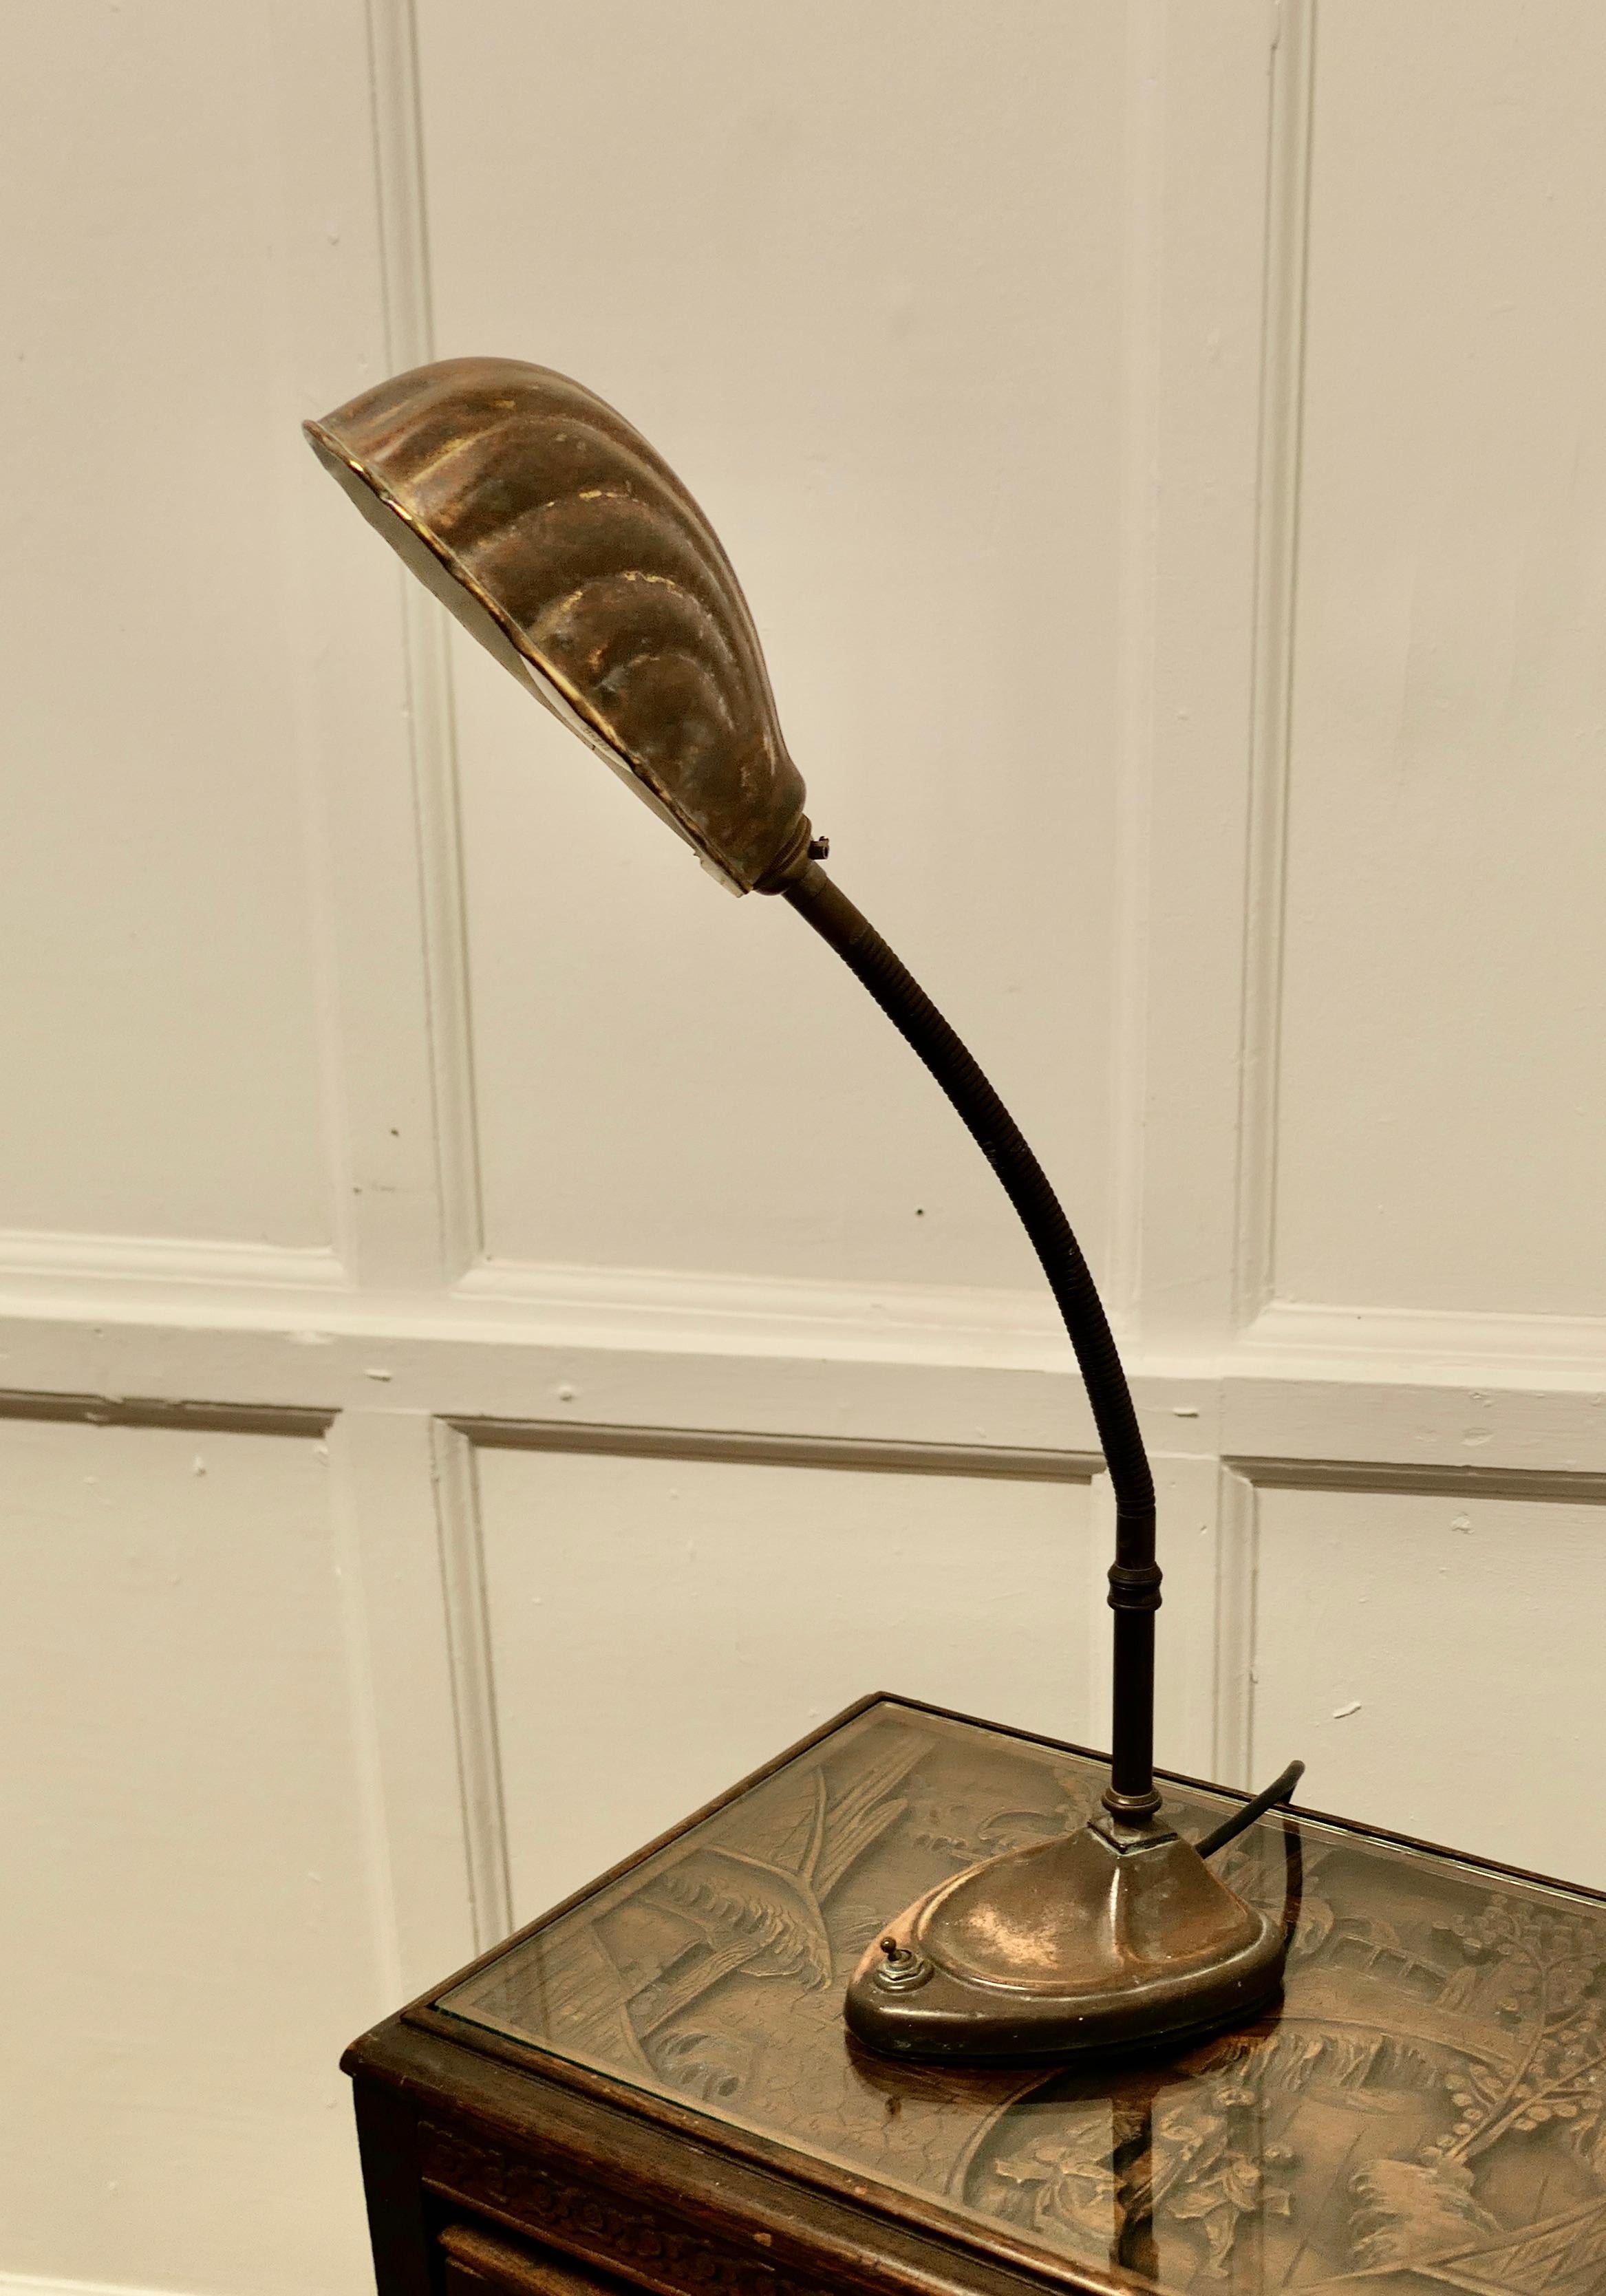 Lampe de bureau traditionnelle en cuivre pour banquier

Lampe de bureau de banquier en cuivre noirci par l'âge.
La lampe est entièrement réglable avec sa bobine flexible et elle est en bon état et fonctionne,
La base de la lampe mesure 6